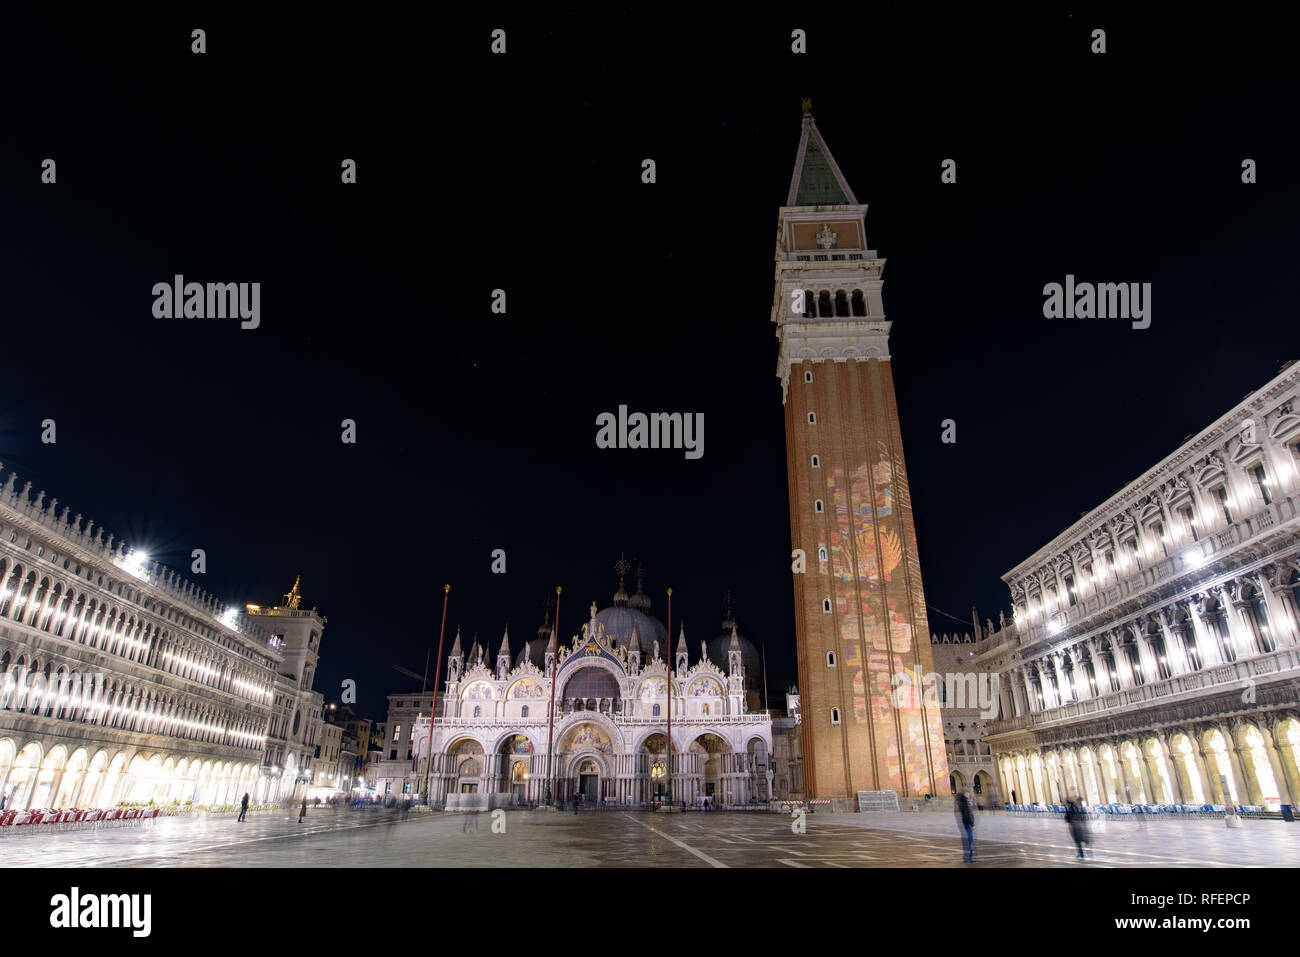 Vue nocturne de la Place Saint-Marc (Piazza San Marco), Venise, Italie Banque D'Images